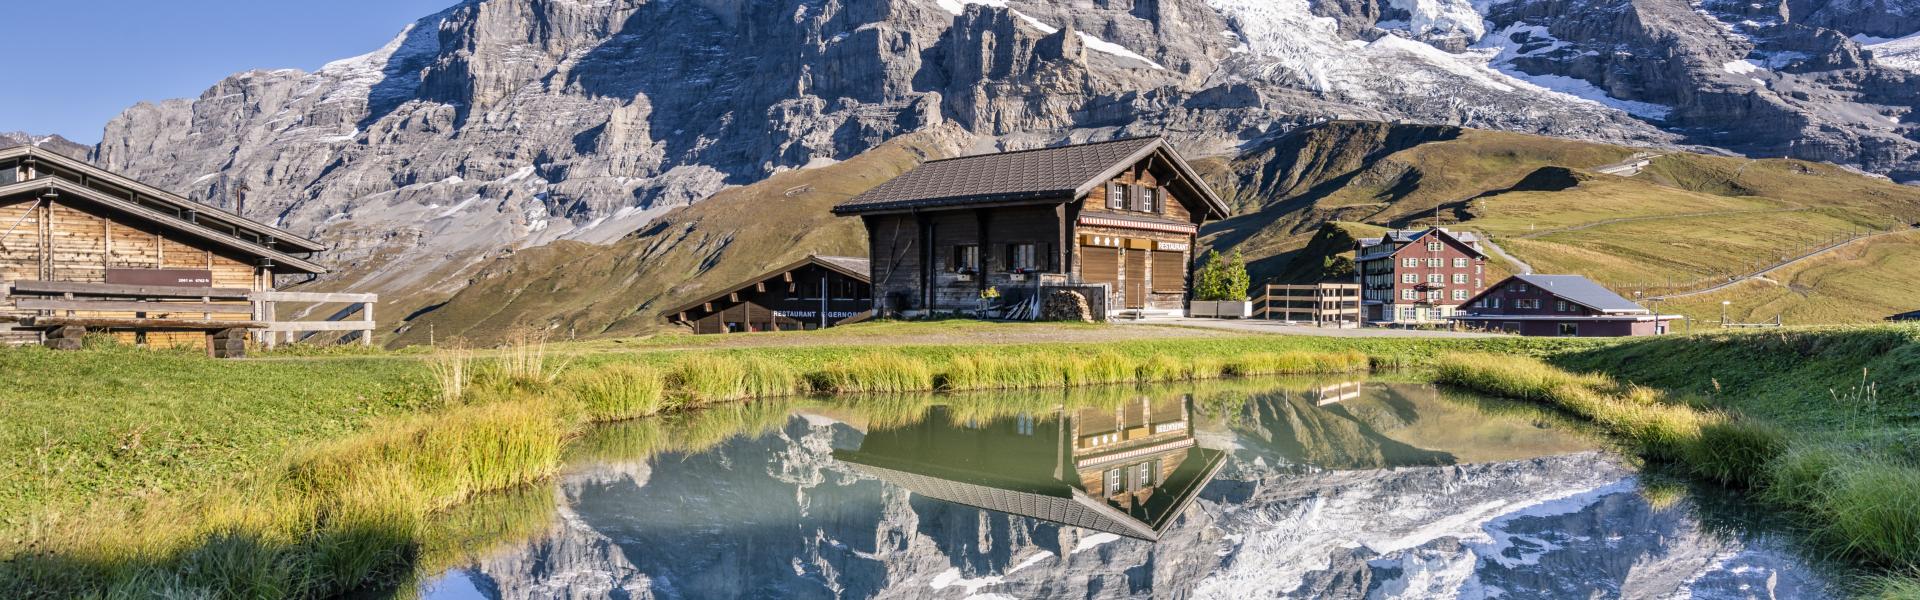 Case Vacanze e Appartamenti nelle Alpi in affitto - CaseVacanza.it